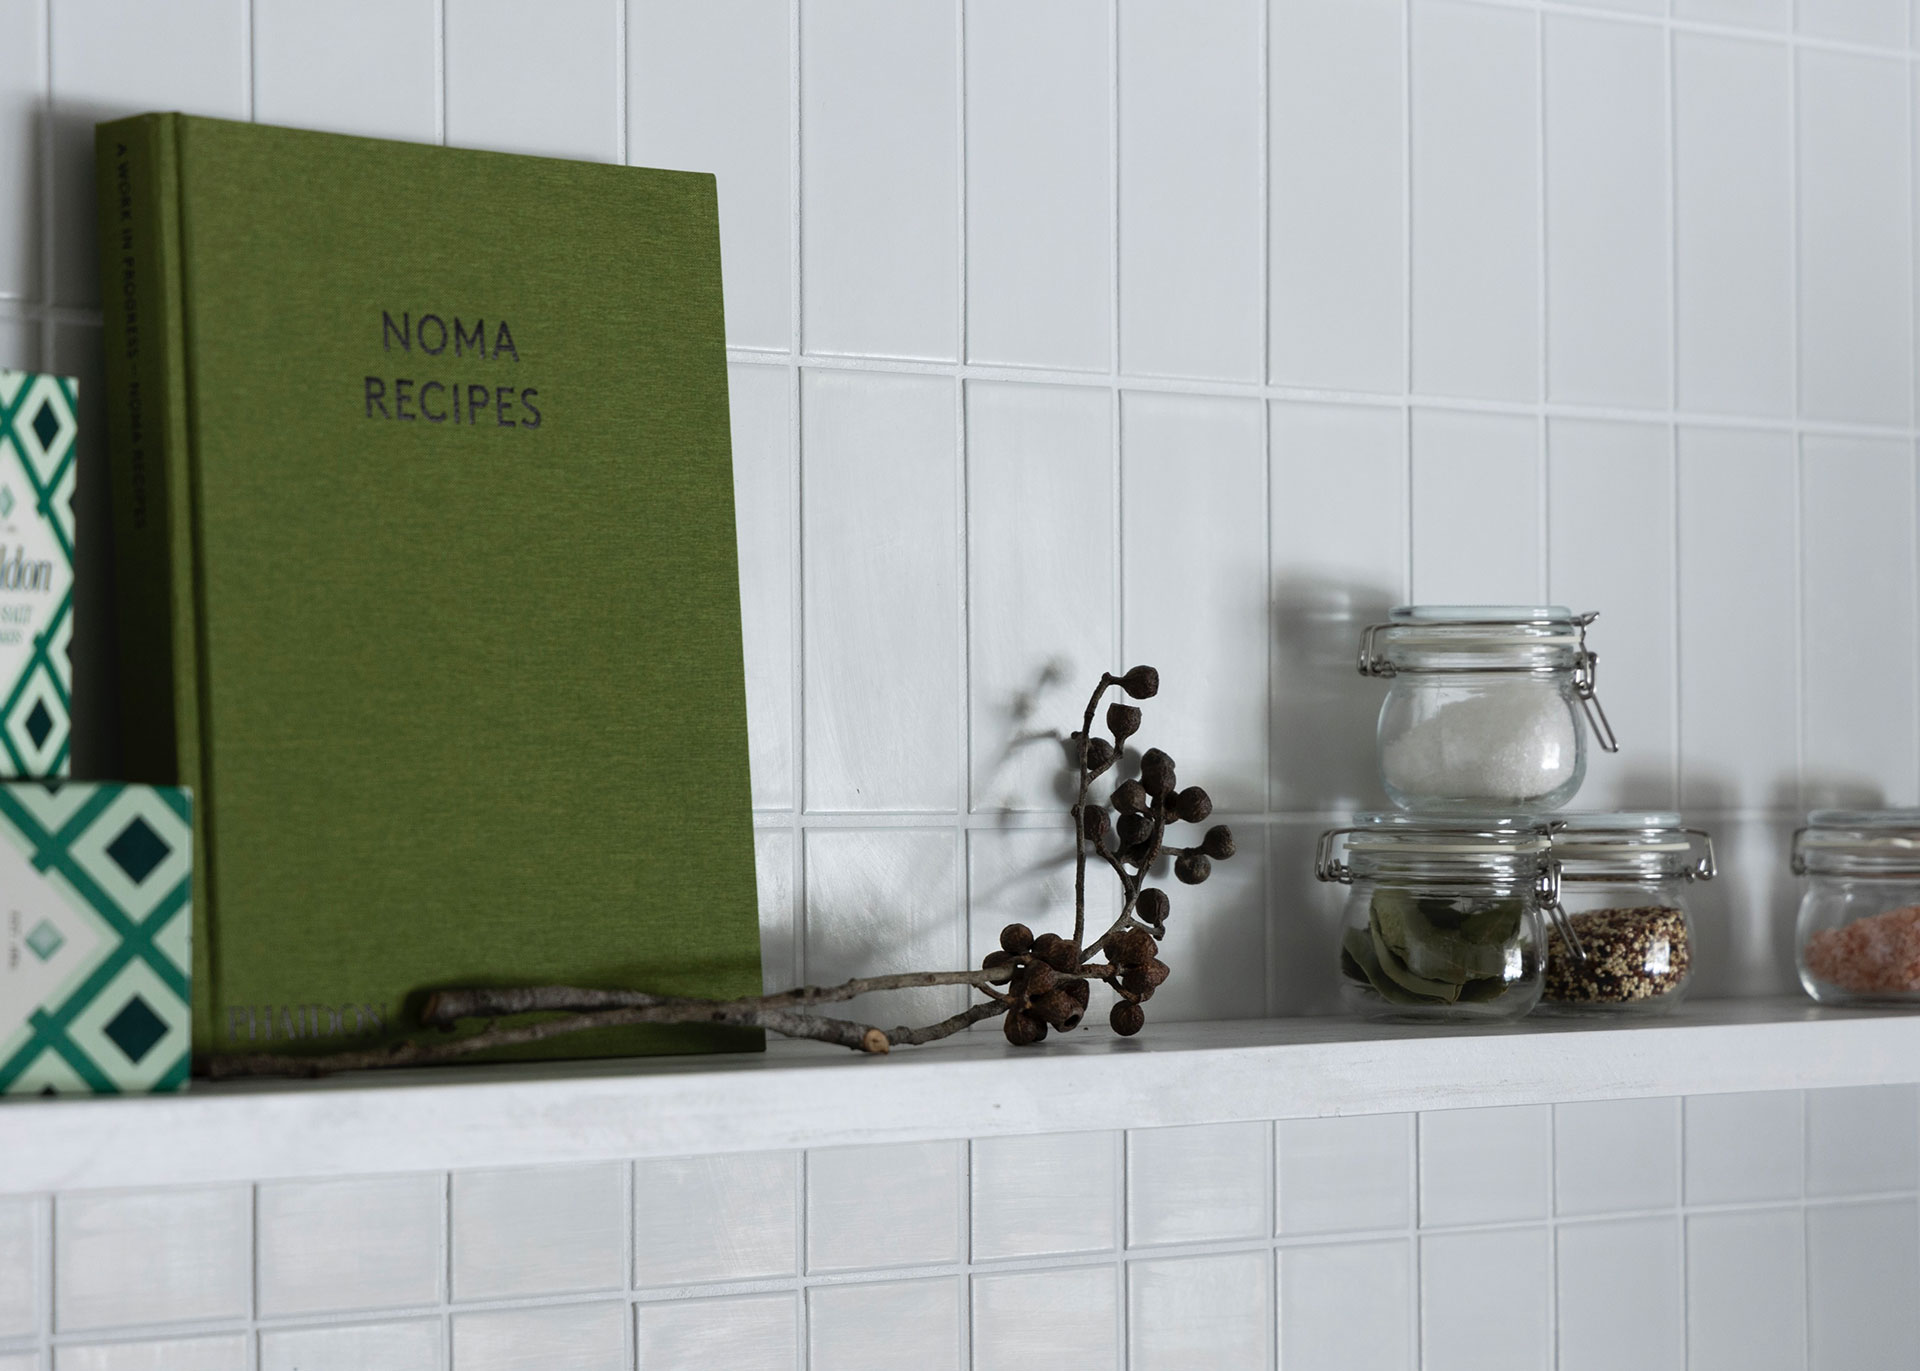 キッチン用品の間に、ドライフラワーやレシピ本を添える。ドライフラワーは、さり気なく横に飾るのがコツ。